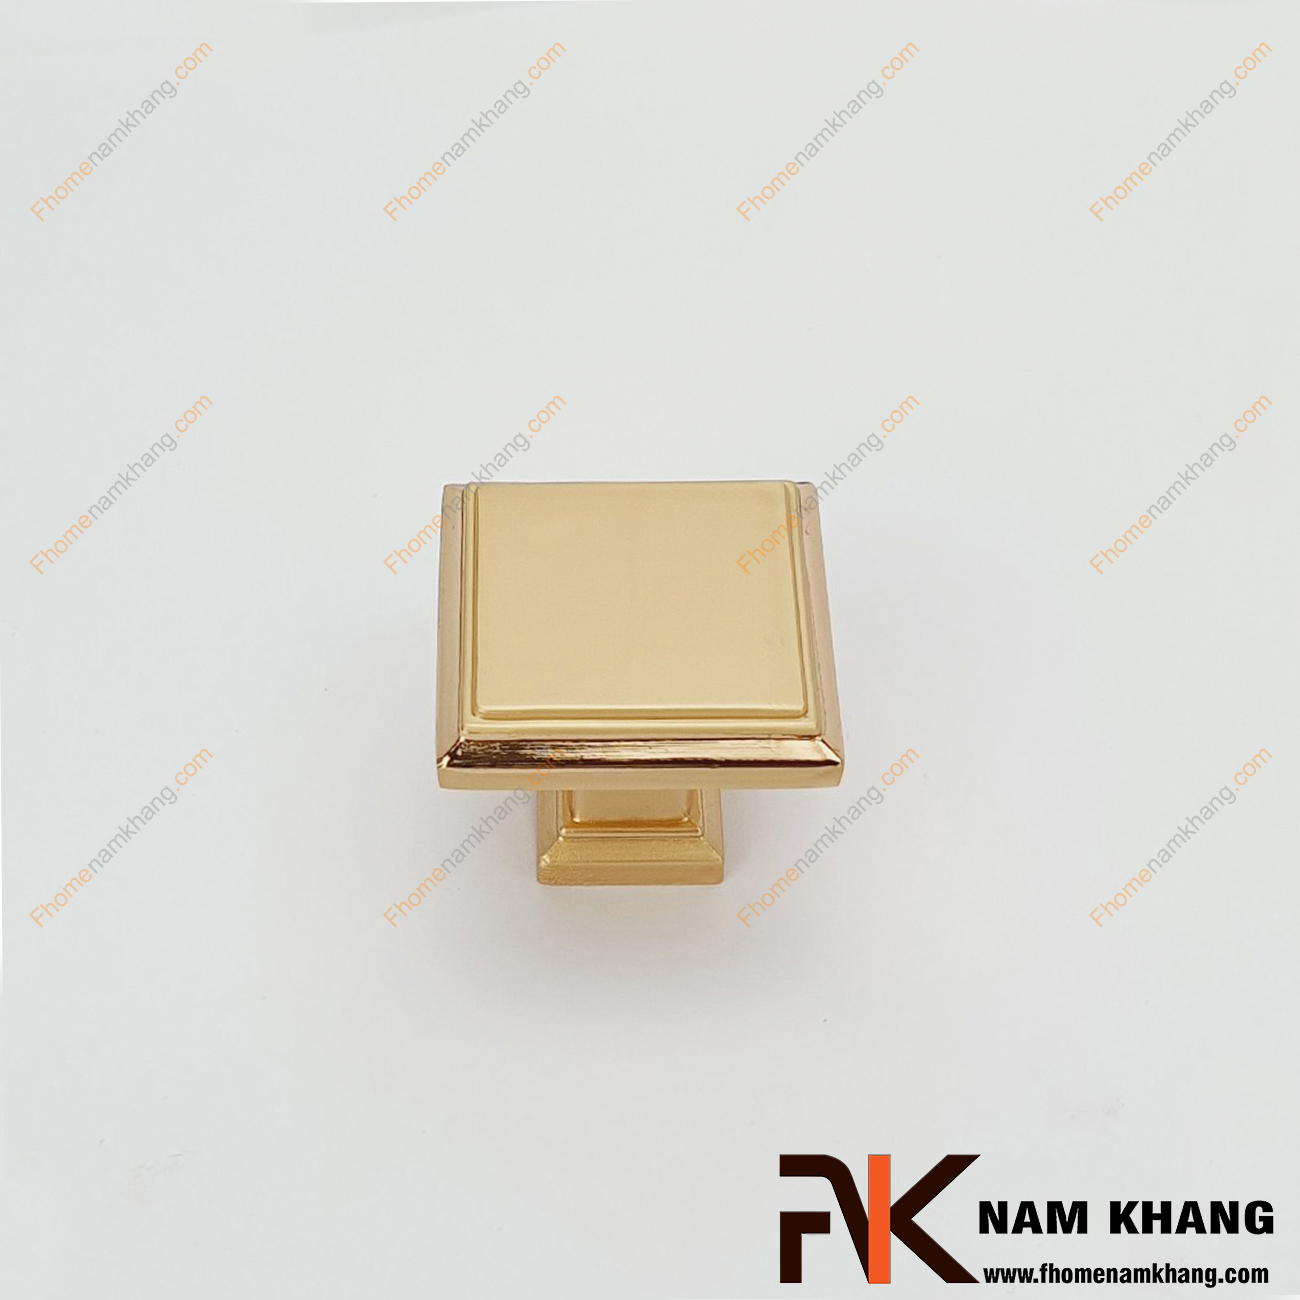 Núm cửa tủ dạng vuông màu vàng viền ánh kim NK230-VK có thiết kế đơn giản từ hợp kim cao cấp với khuôn dạng đầu vuông và đế vuông đứng.